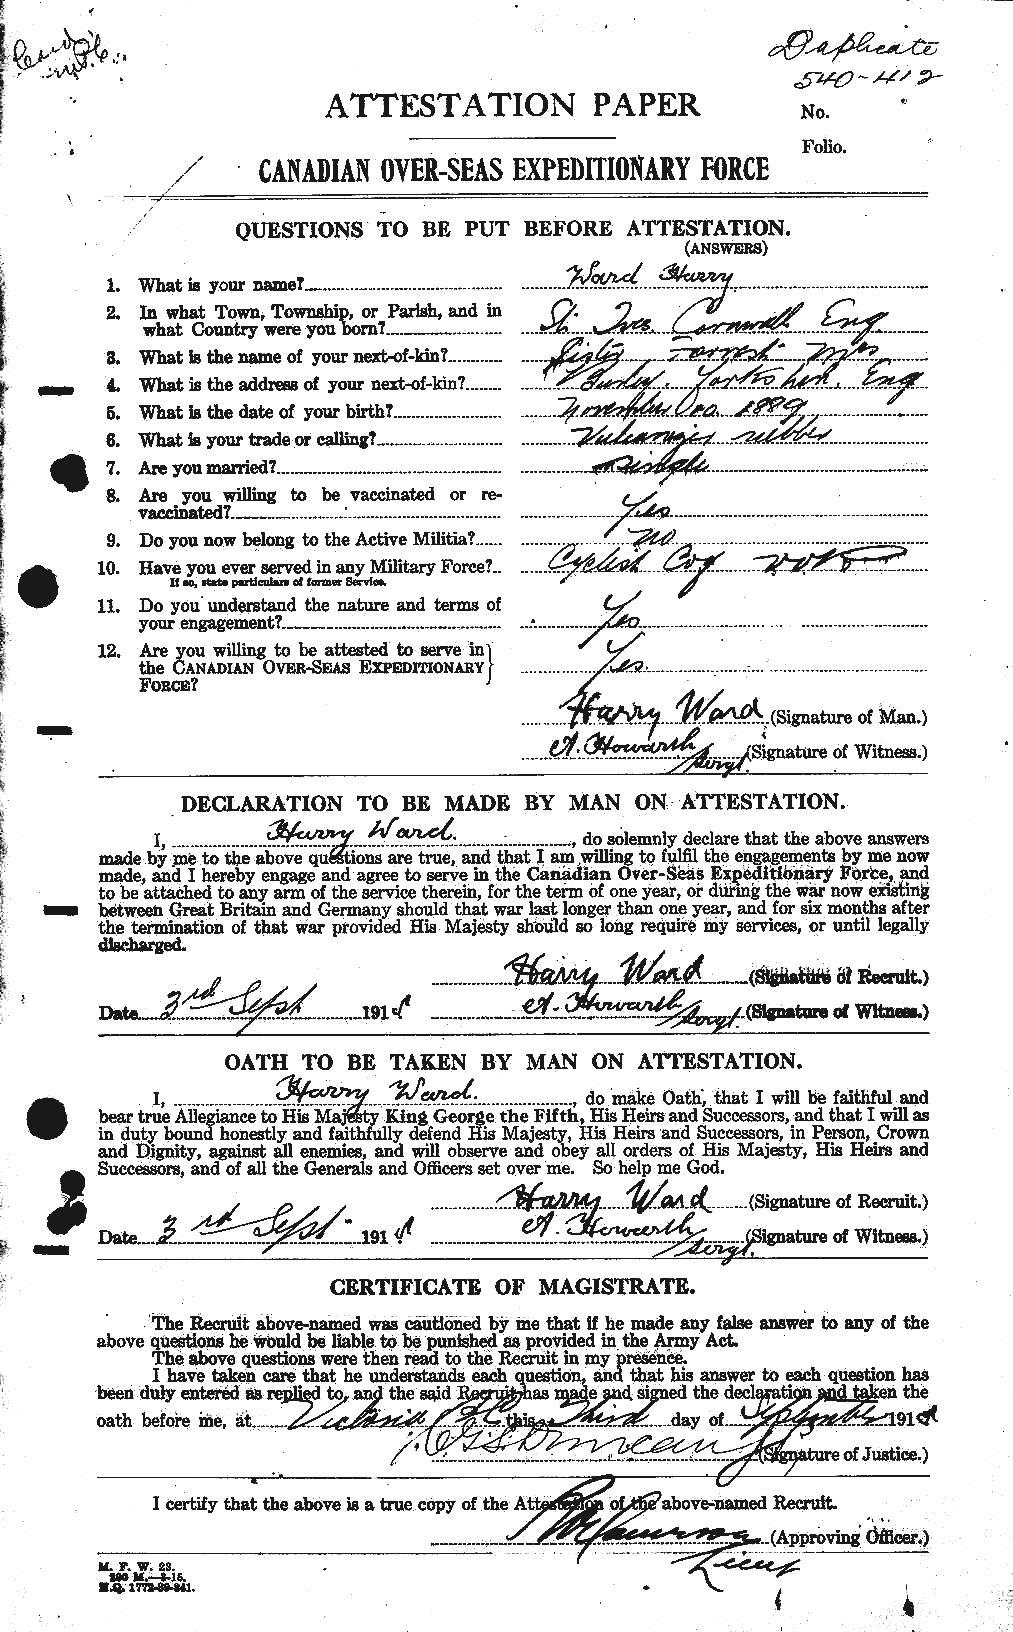 Dossiers du Personnel de la Première Guerre mondiale - CEC 657808a